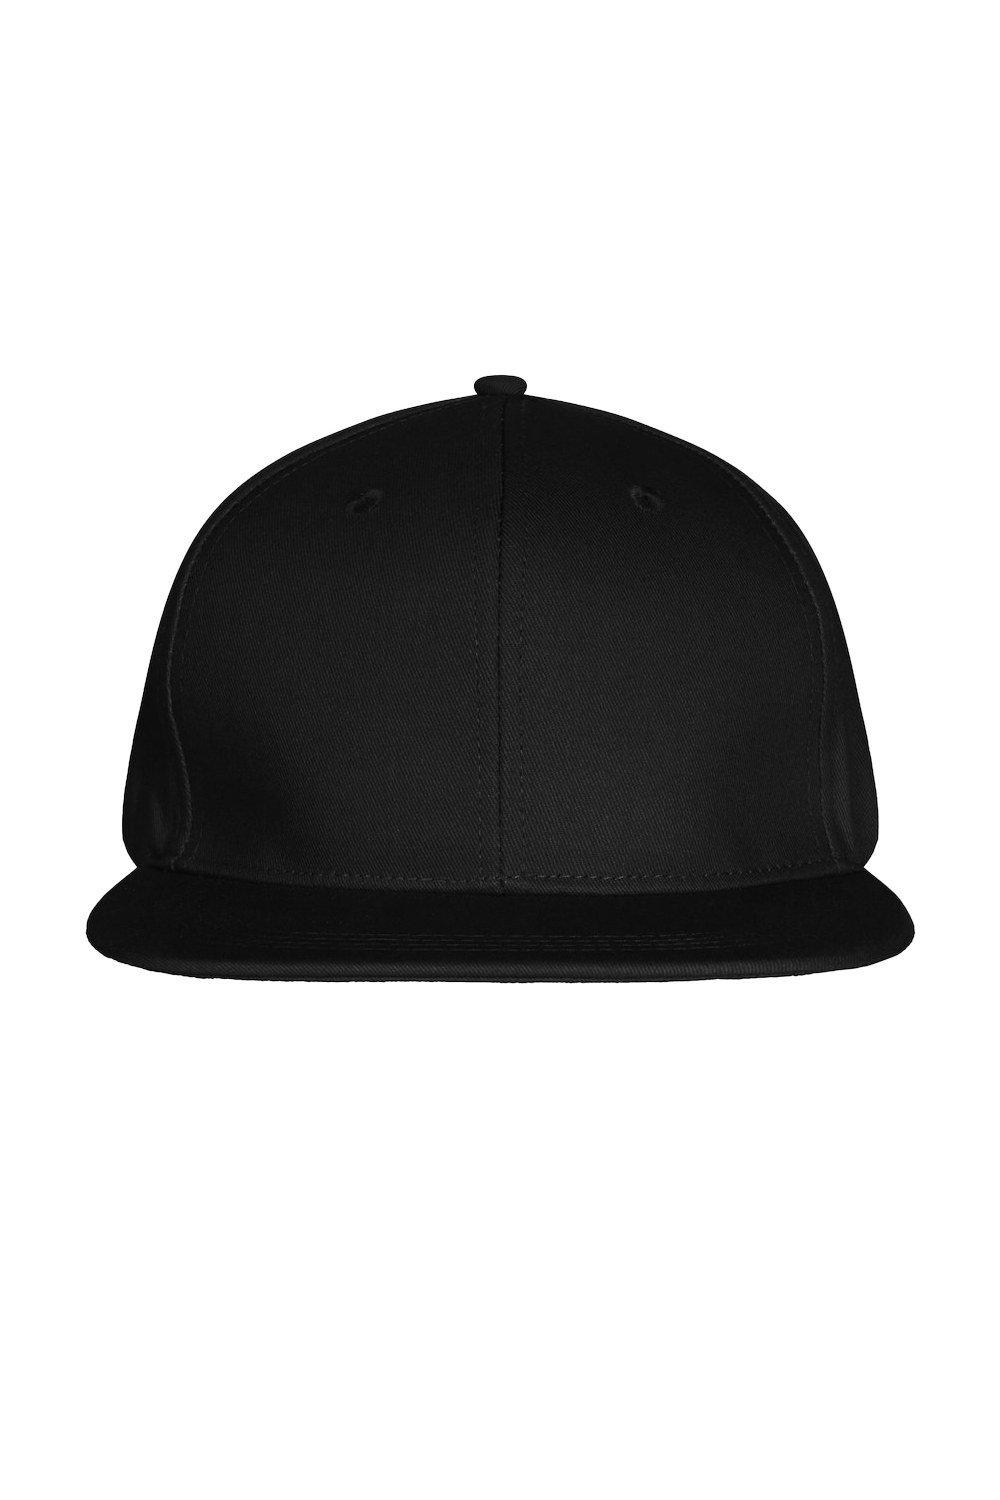 Уличная кепка Clique, черный